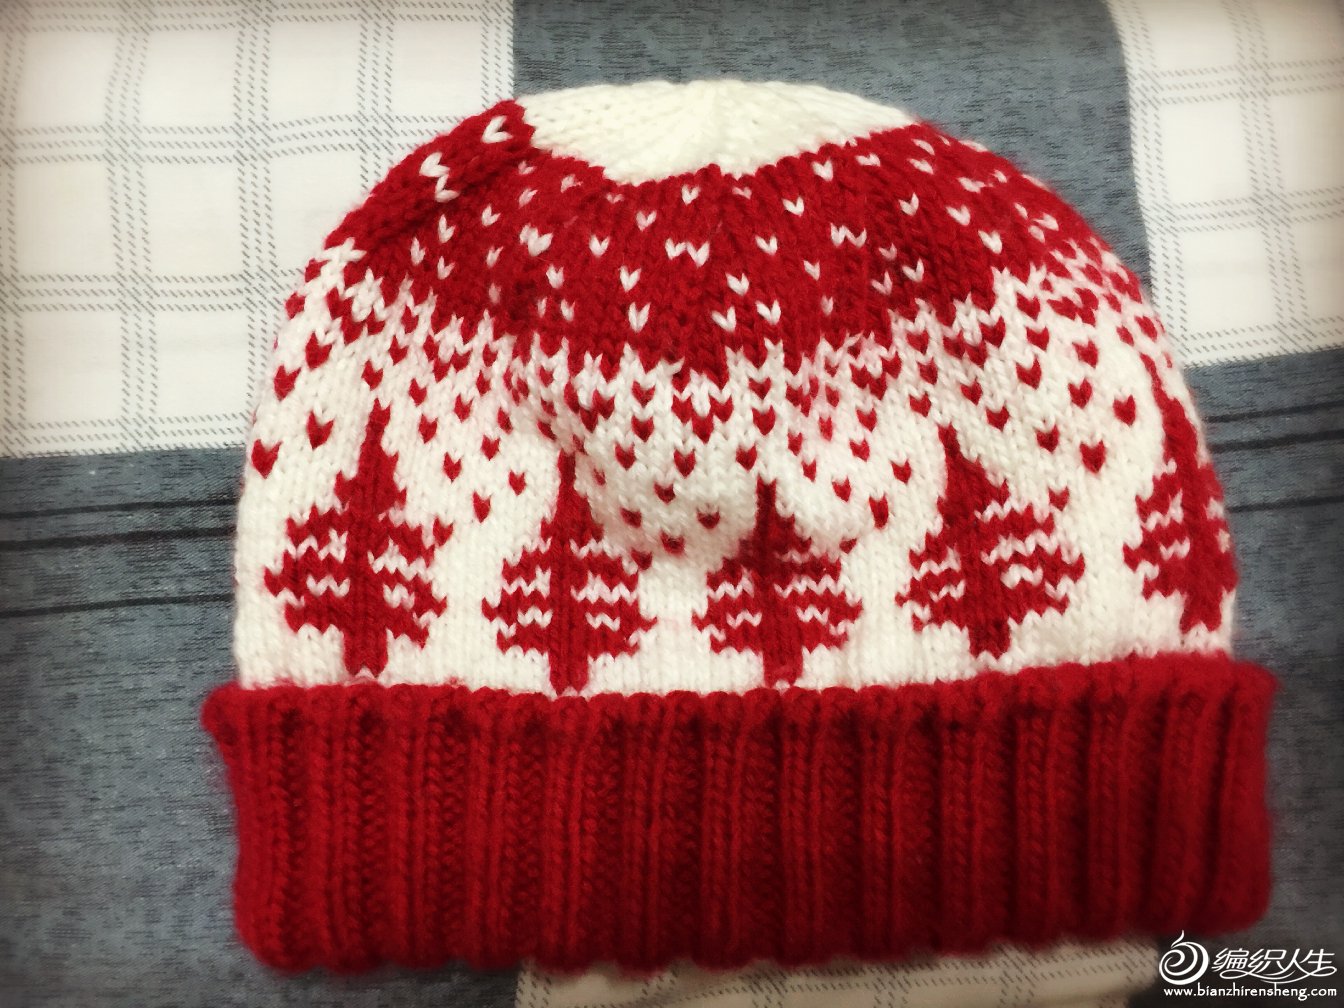 编织教程 红白棒针圣诞树提花帽子 用针:4mm帽身,3